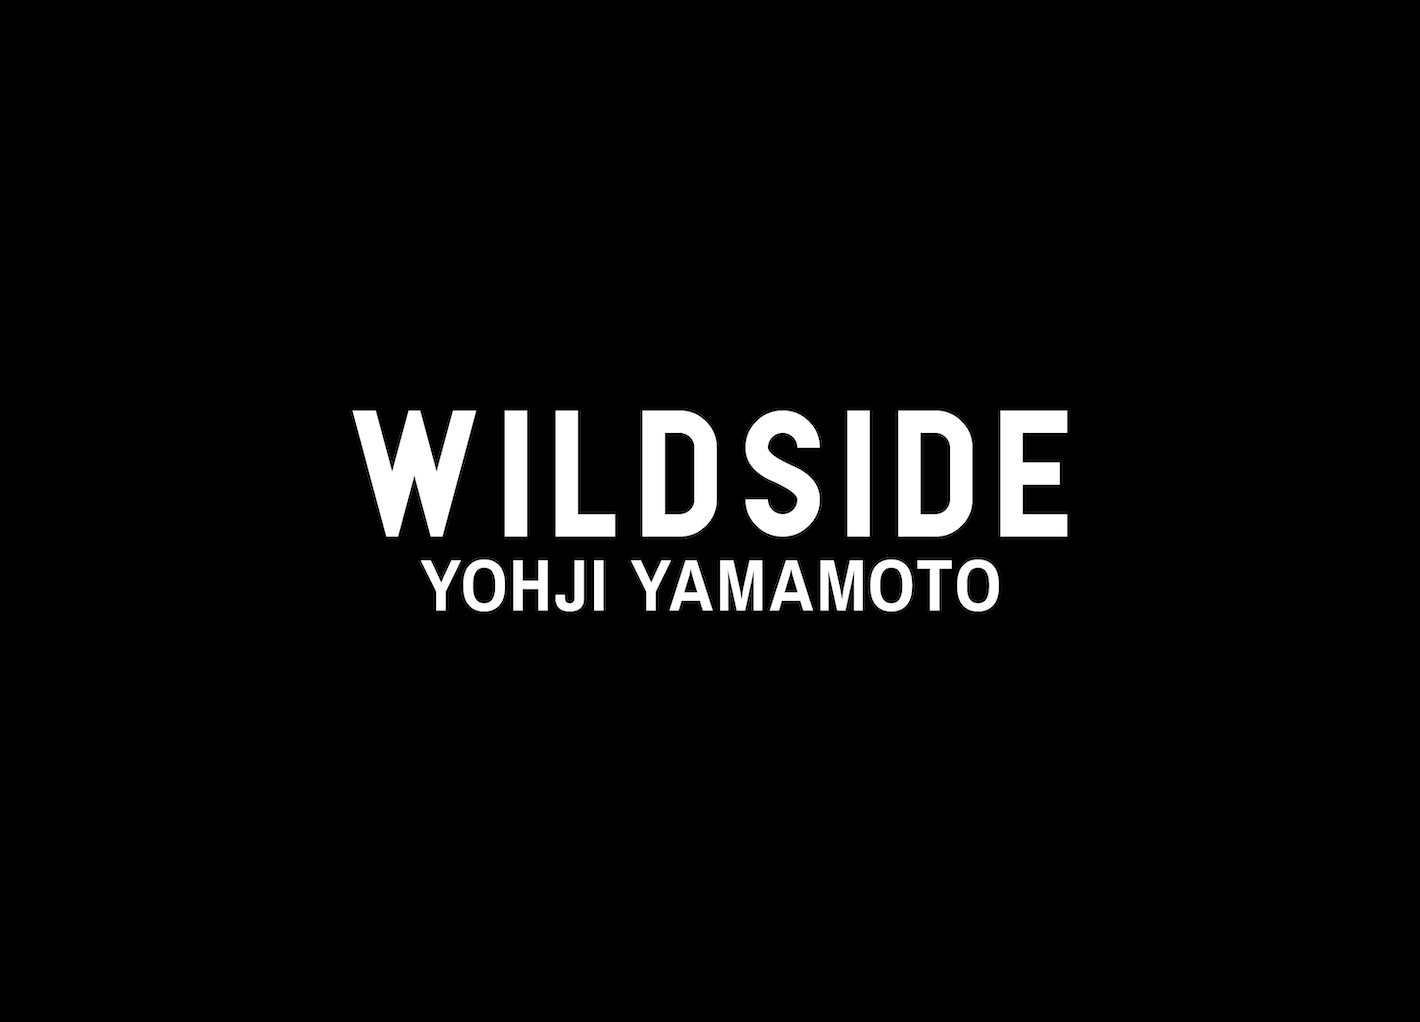 5月17日発売 WILDSIDE YOHJI YAMAMOTO “Original Collection”